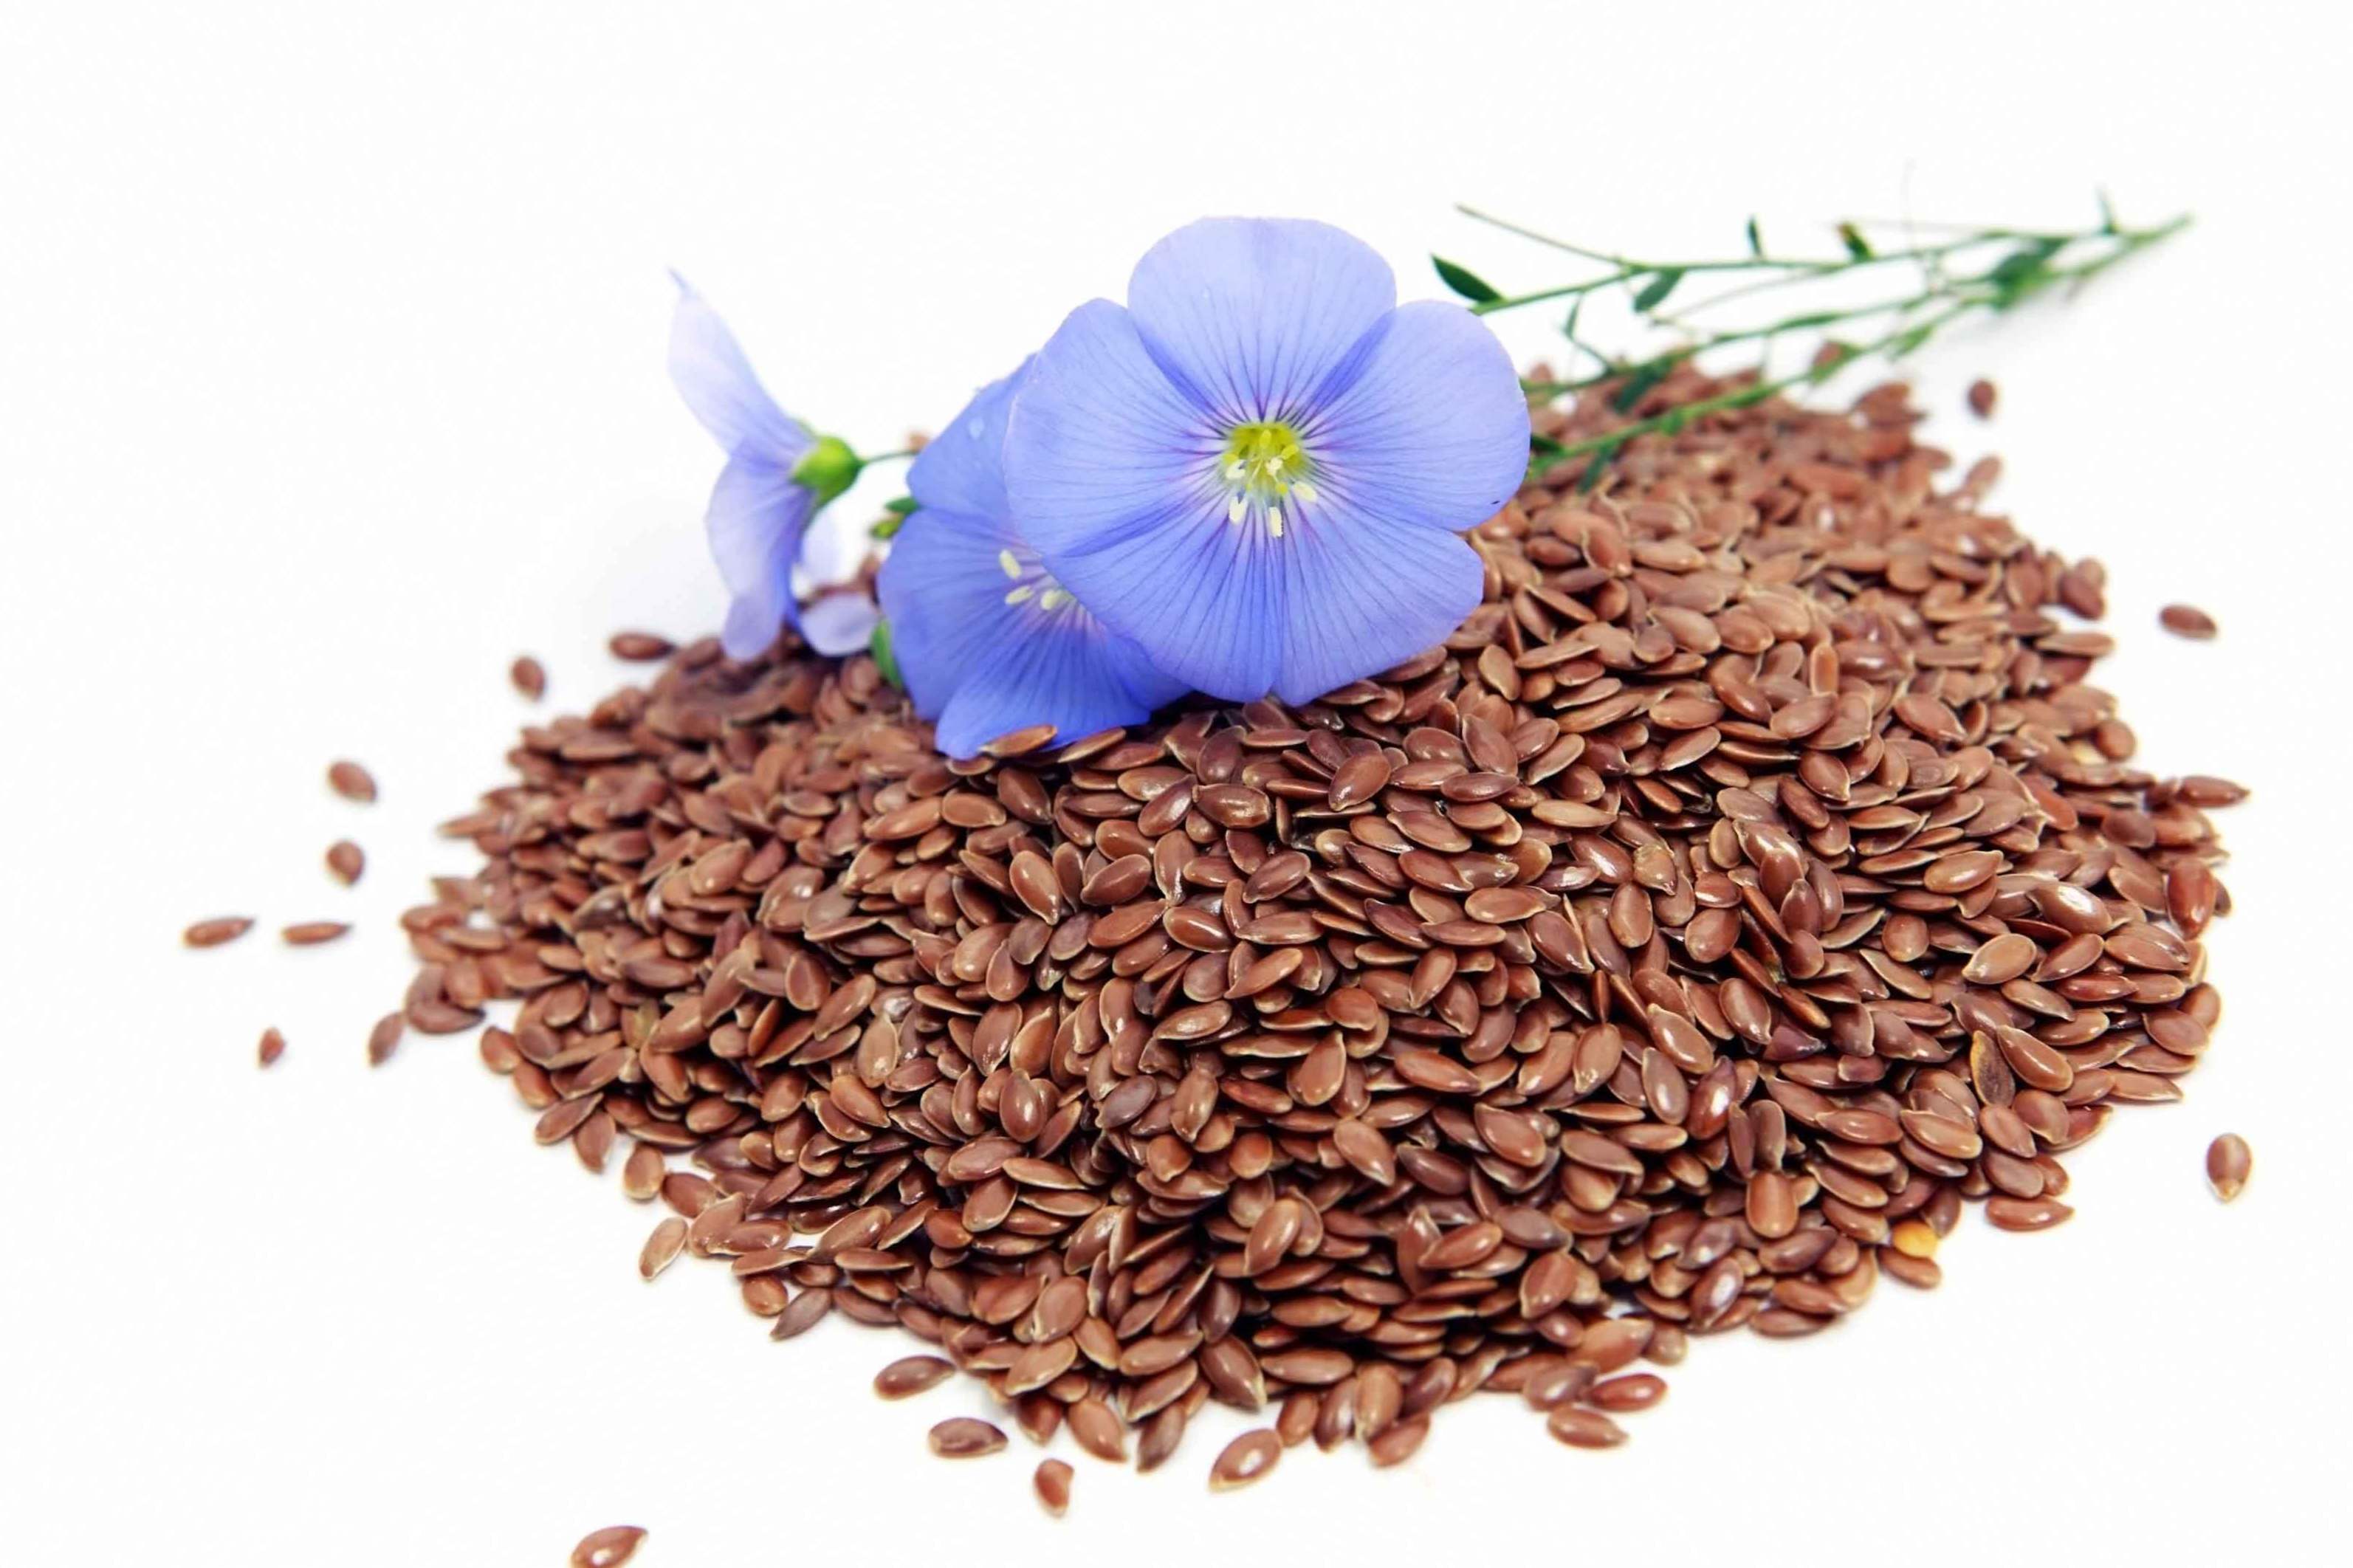 Koristne lastnosti lanenih semen in kontraindikacije